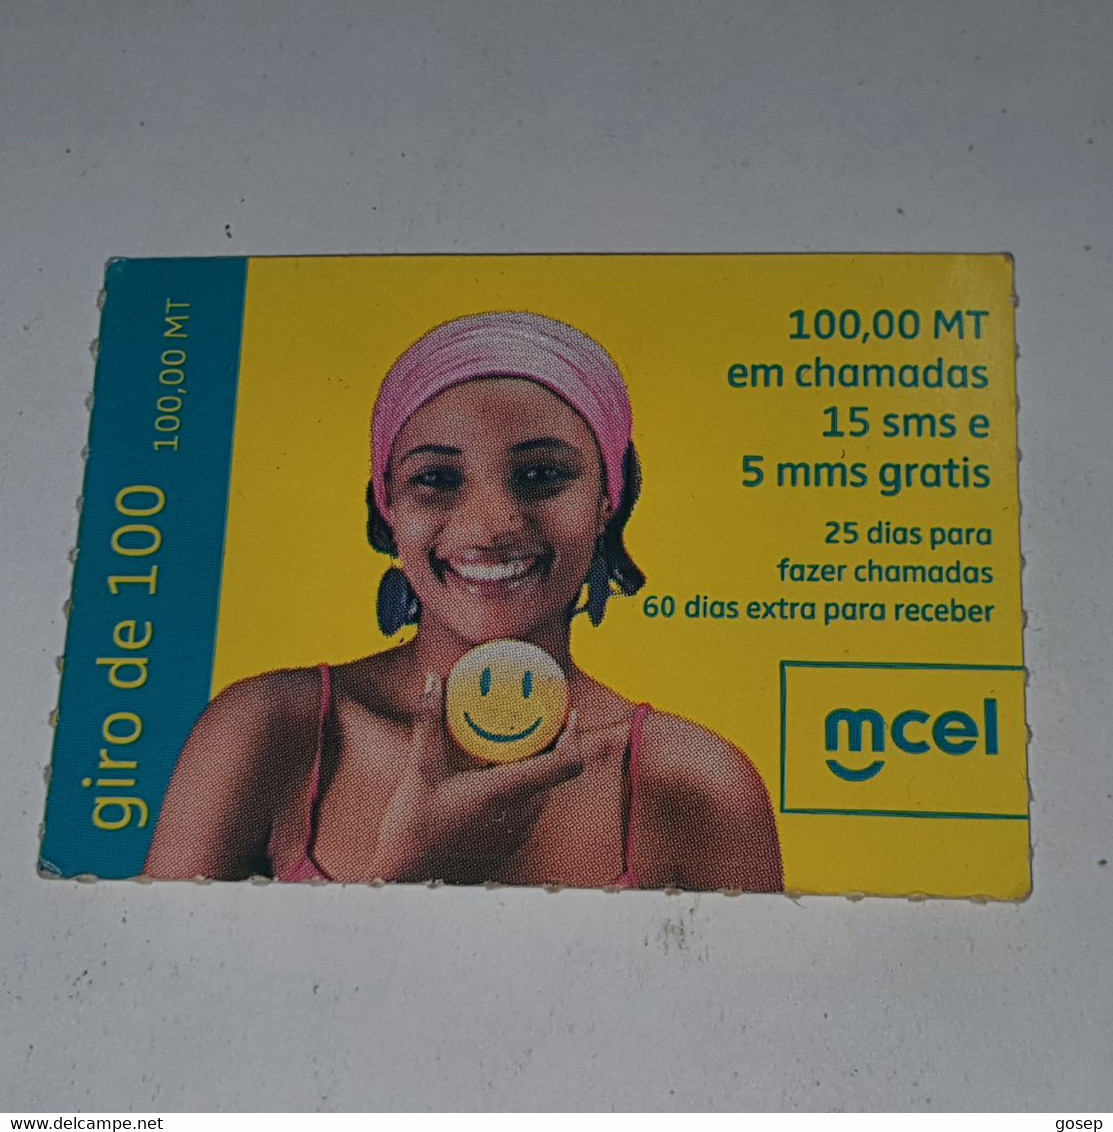 Mozambique-(MZ-MCE-REC-0007B)-(16)-Giro De 100-(55121776784599)-(19/5/2011)-used Card - Mozambique